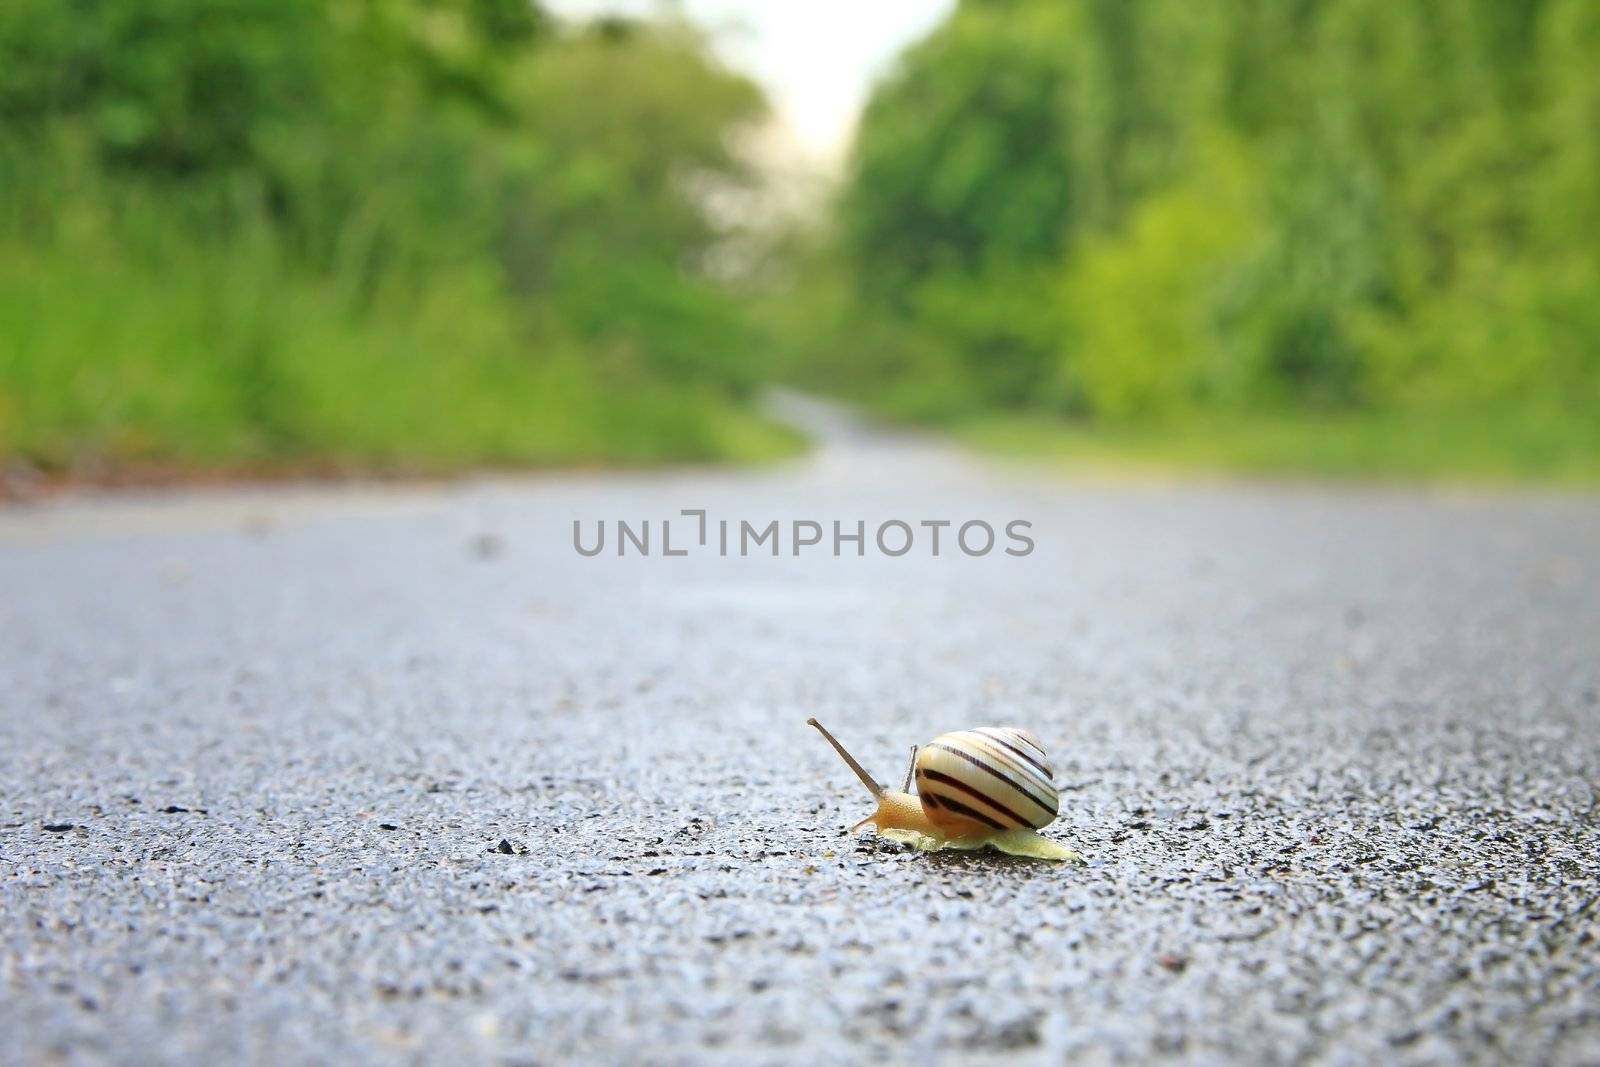 Snail by Digoarpi